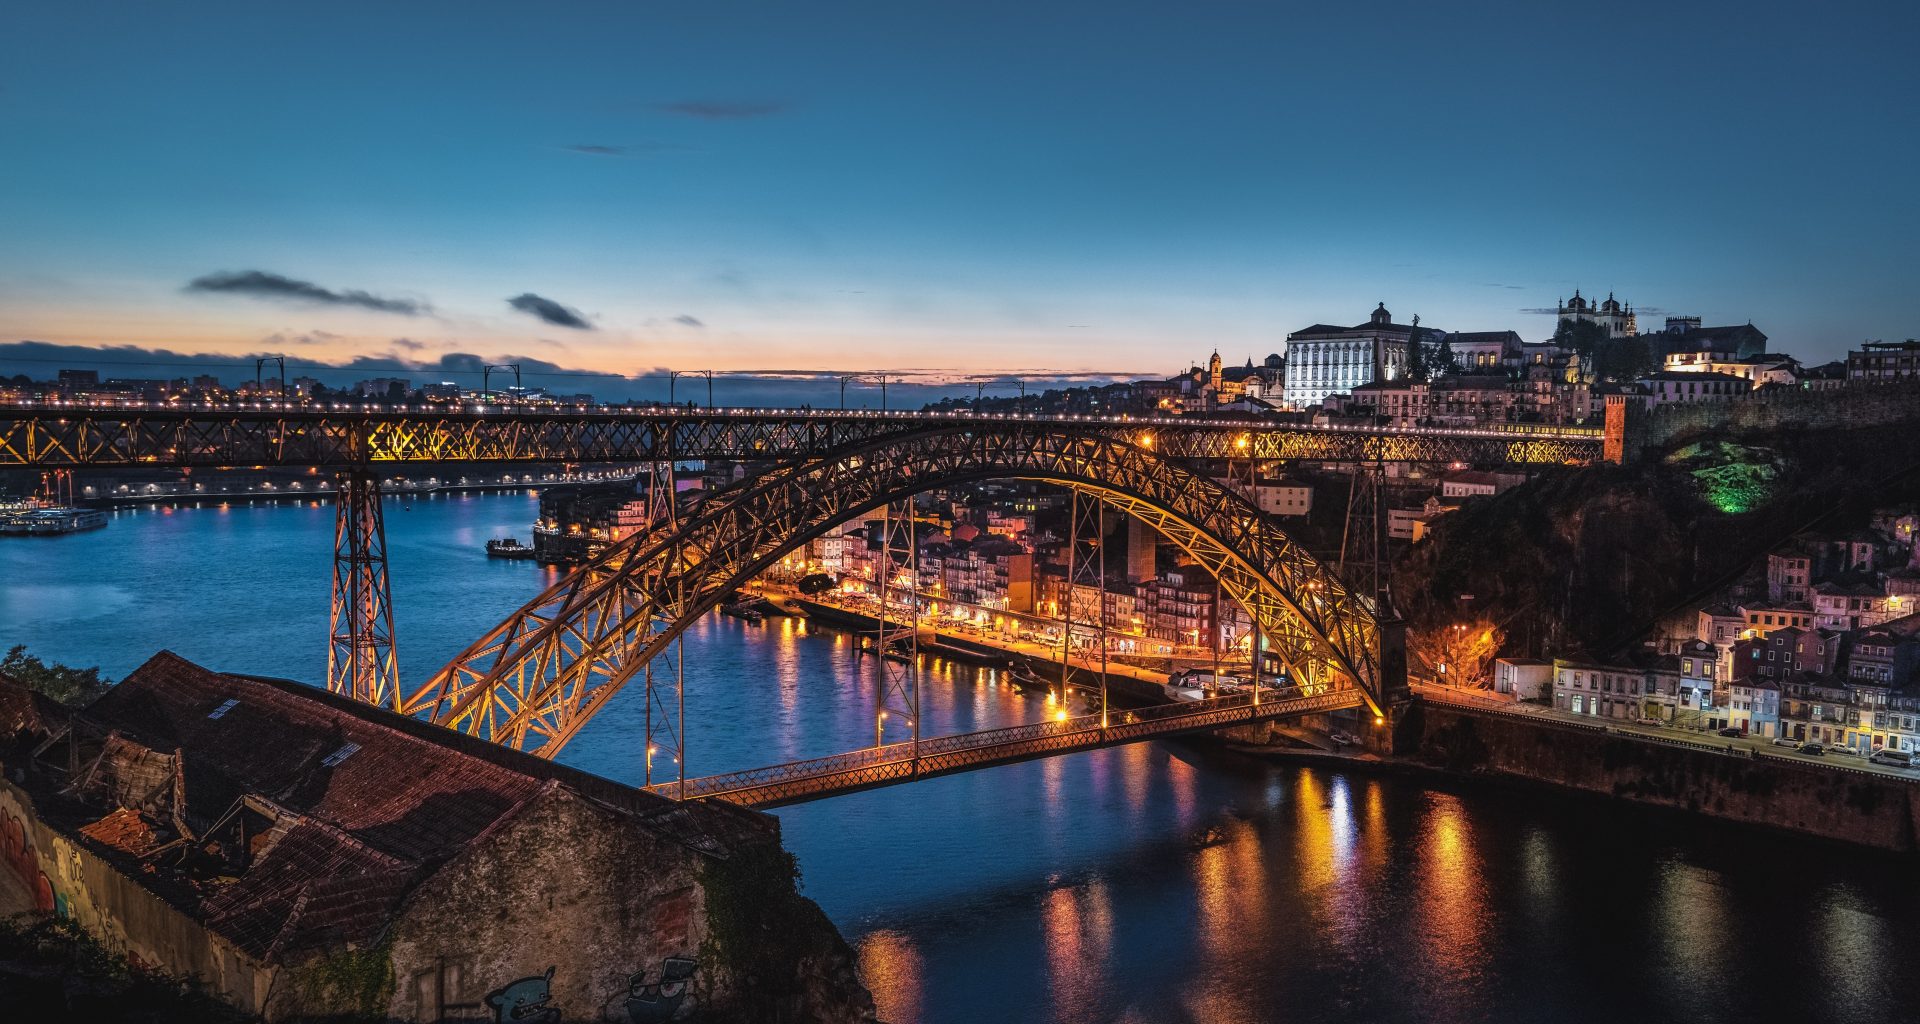 El puente portugués al atardecer en Oporto, Portugal.